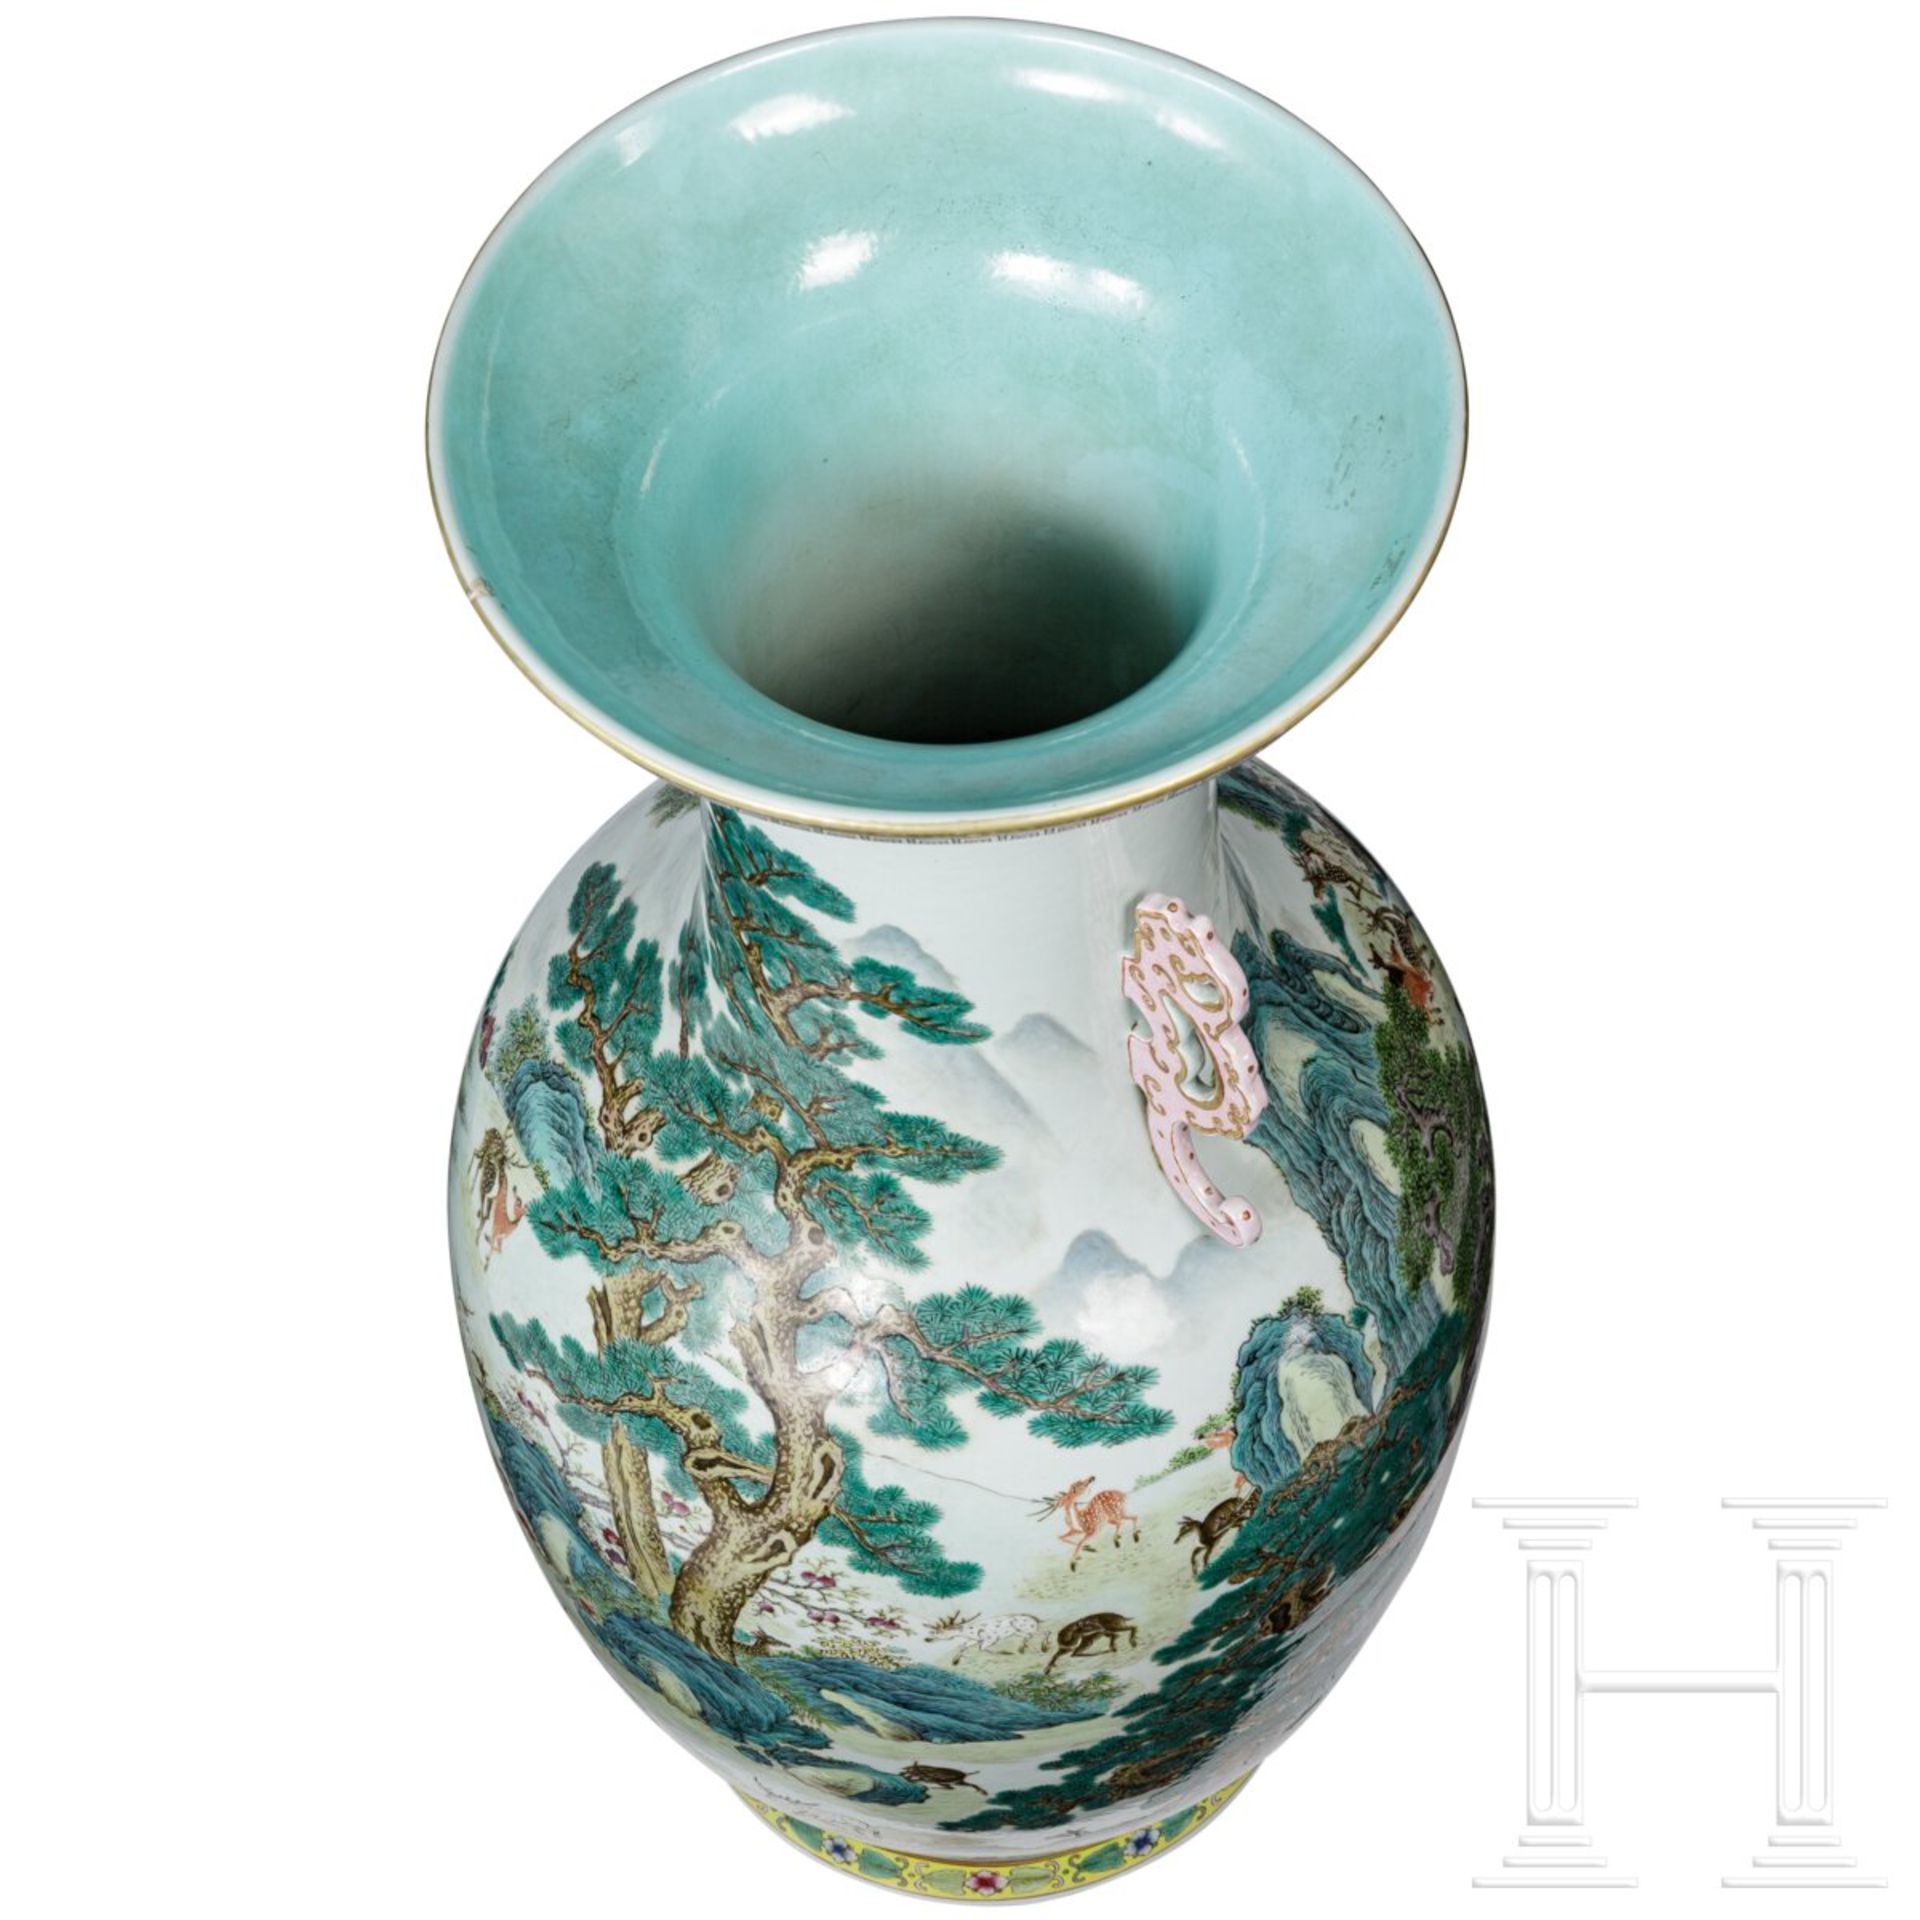 Monumentale Famille-rose-Vase mit "Hundert-Hirsche-Dekor", späte Qing-Dynastie oder frühe Republik,  - Bild 5 aus 24